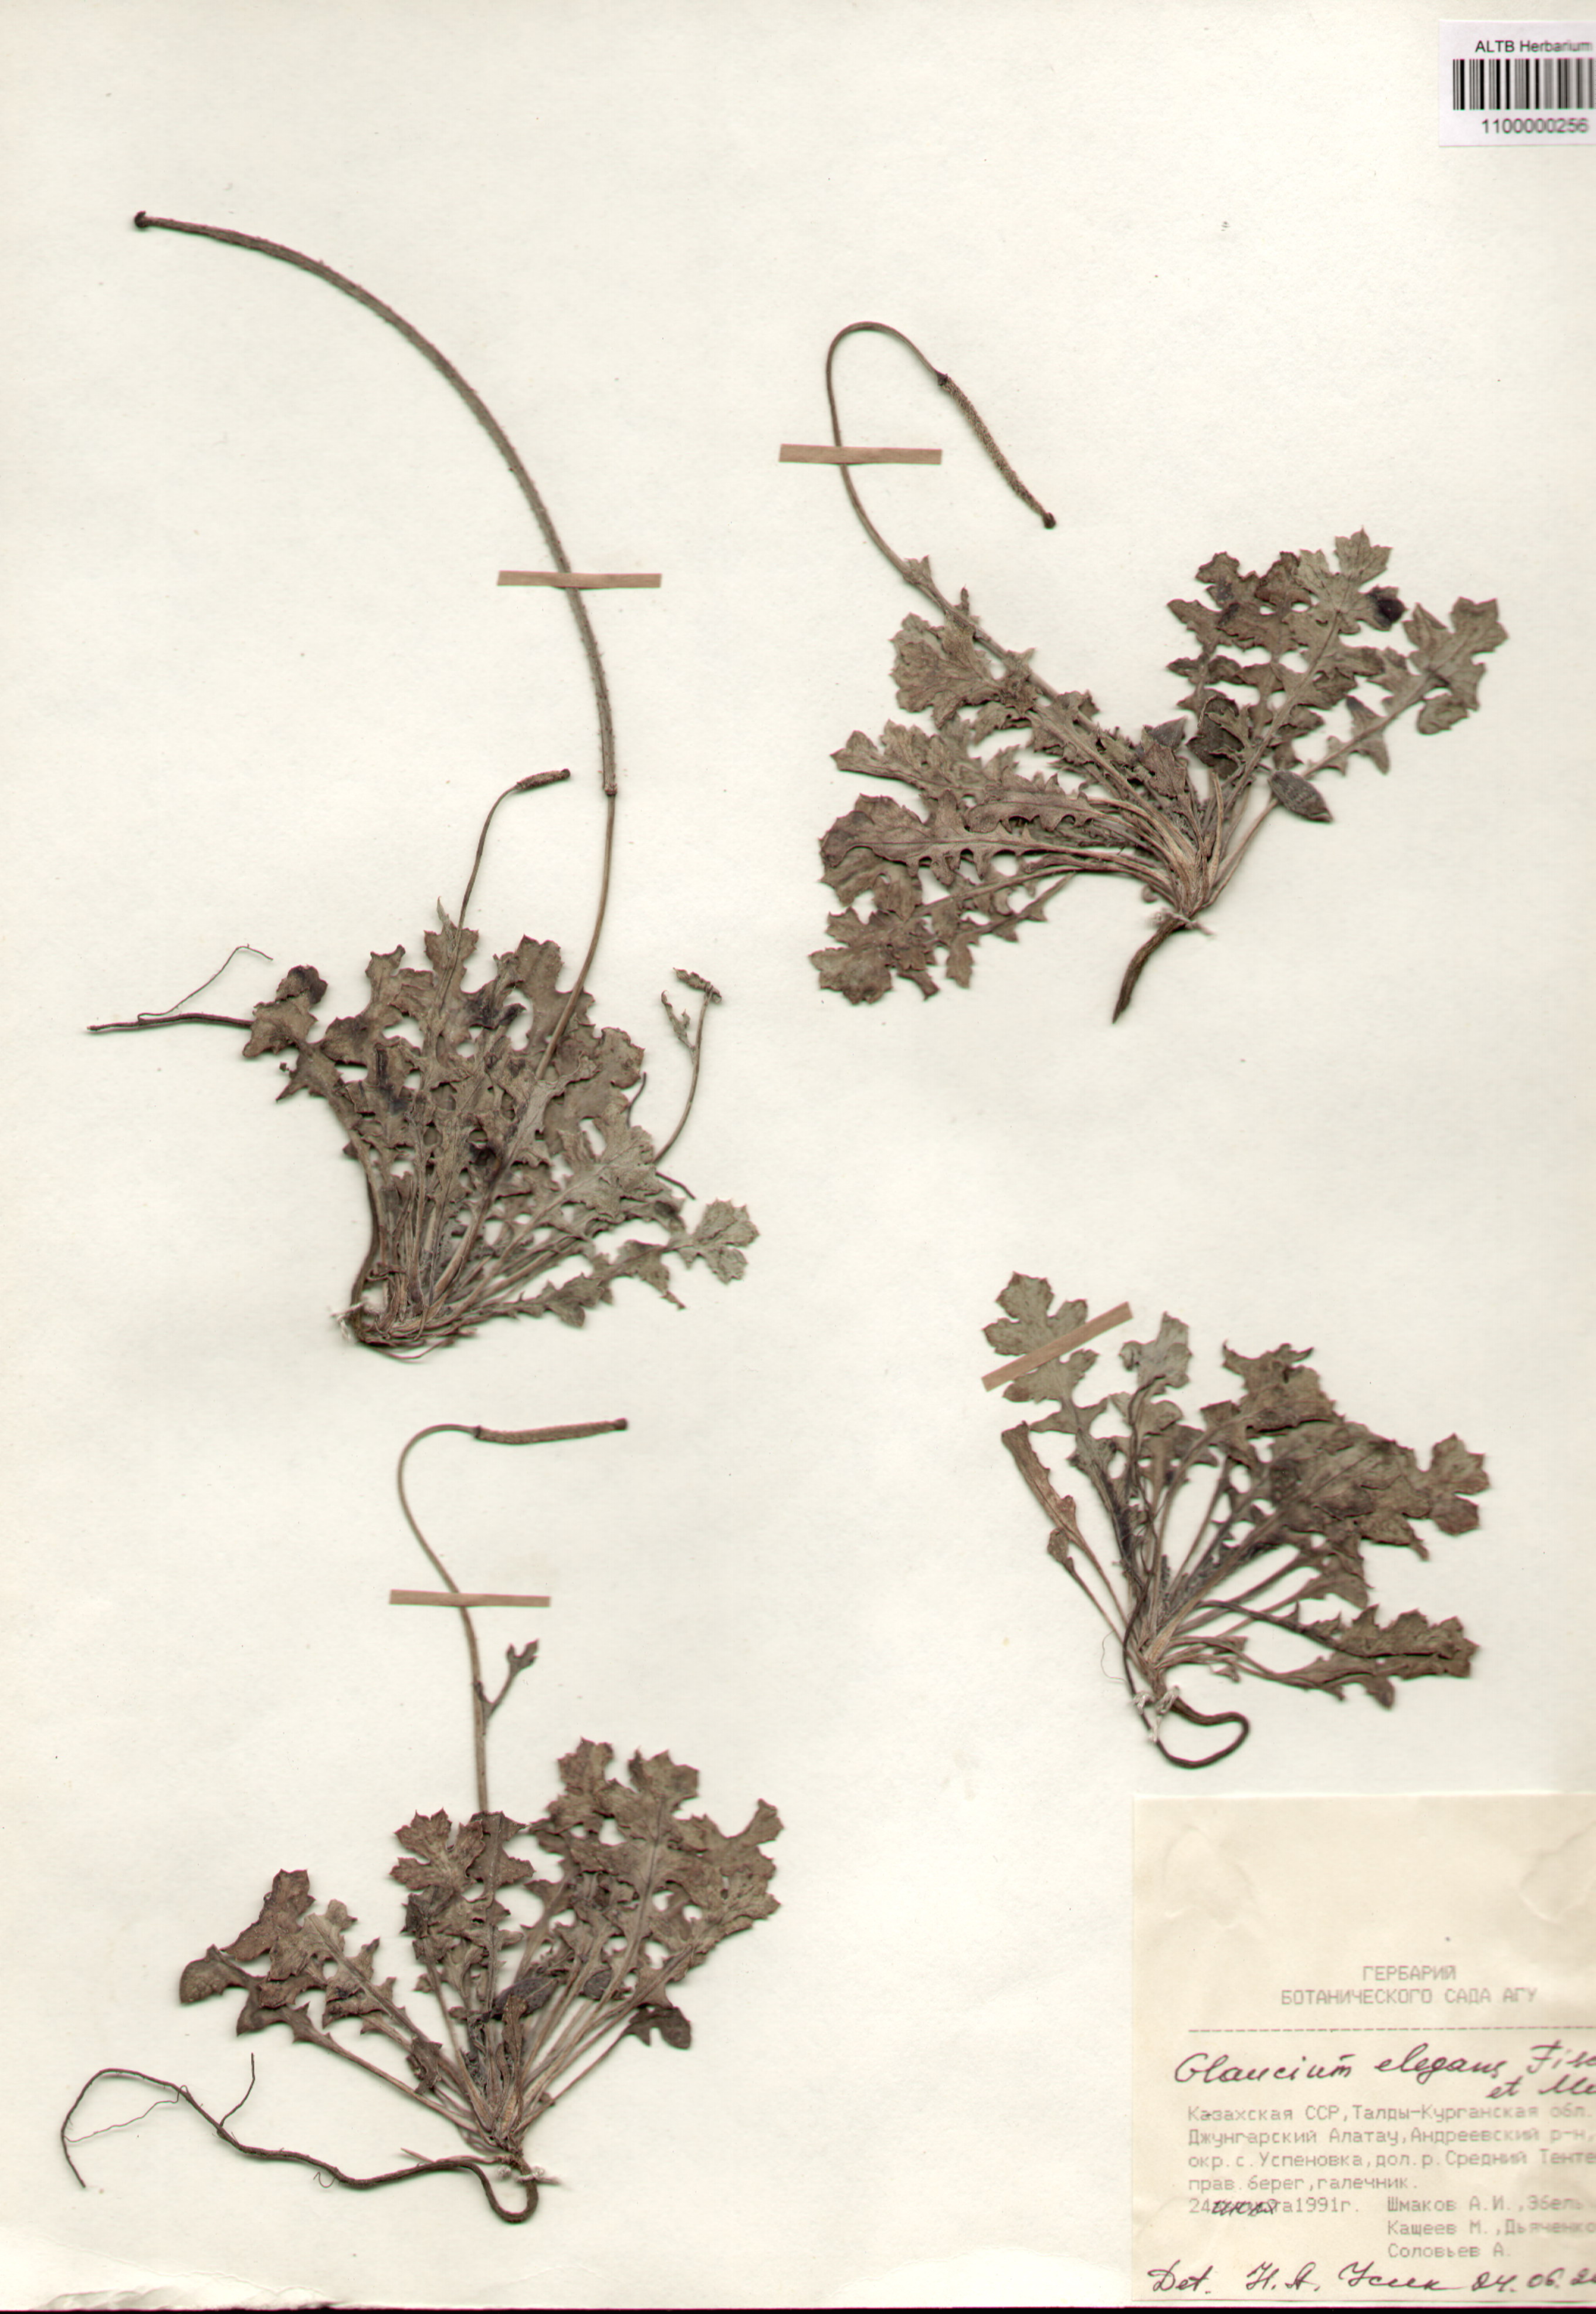 Papaveraceae,Glaucium elegans Fisch. et Mey.